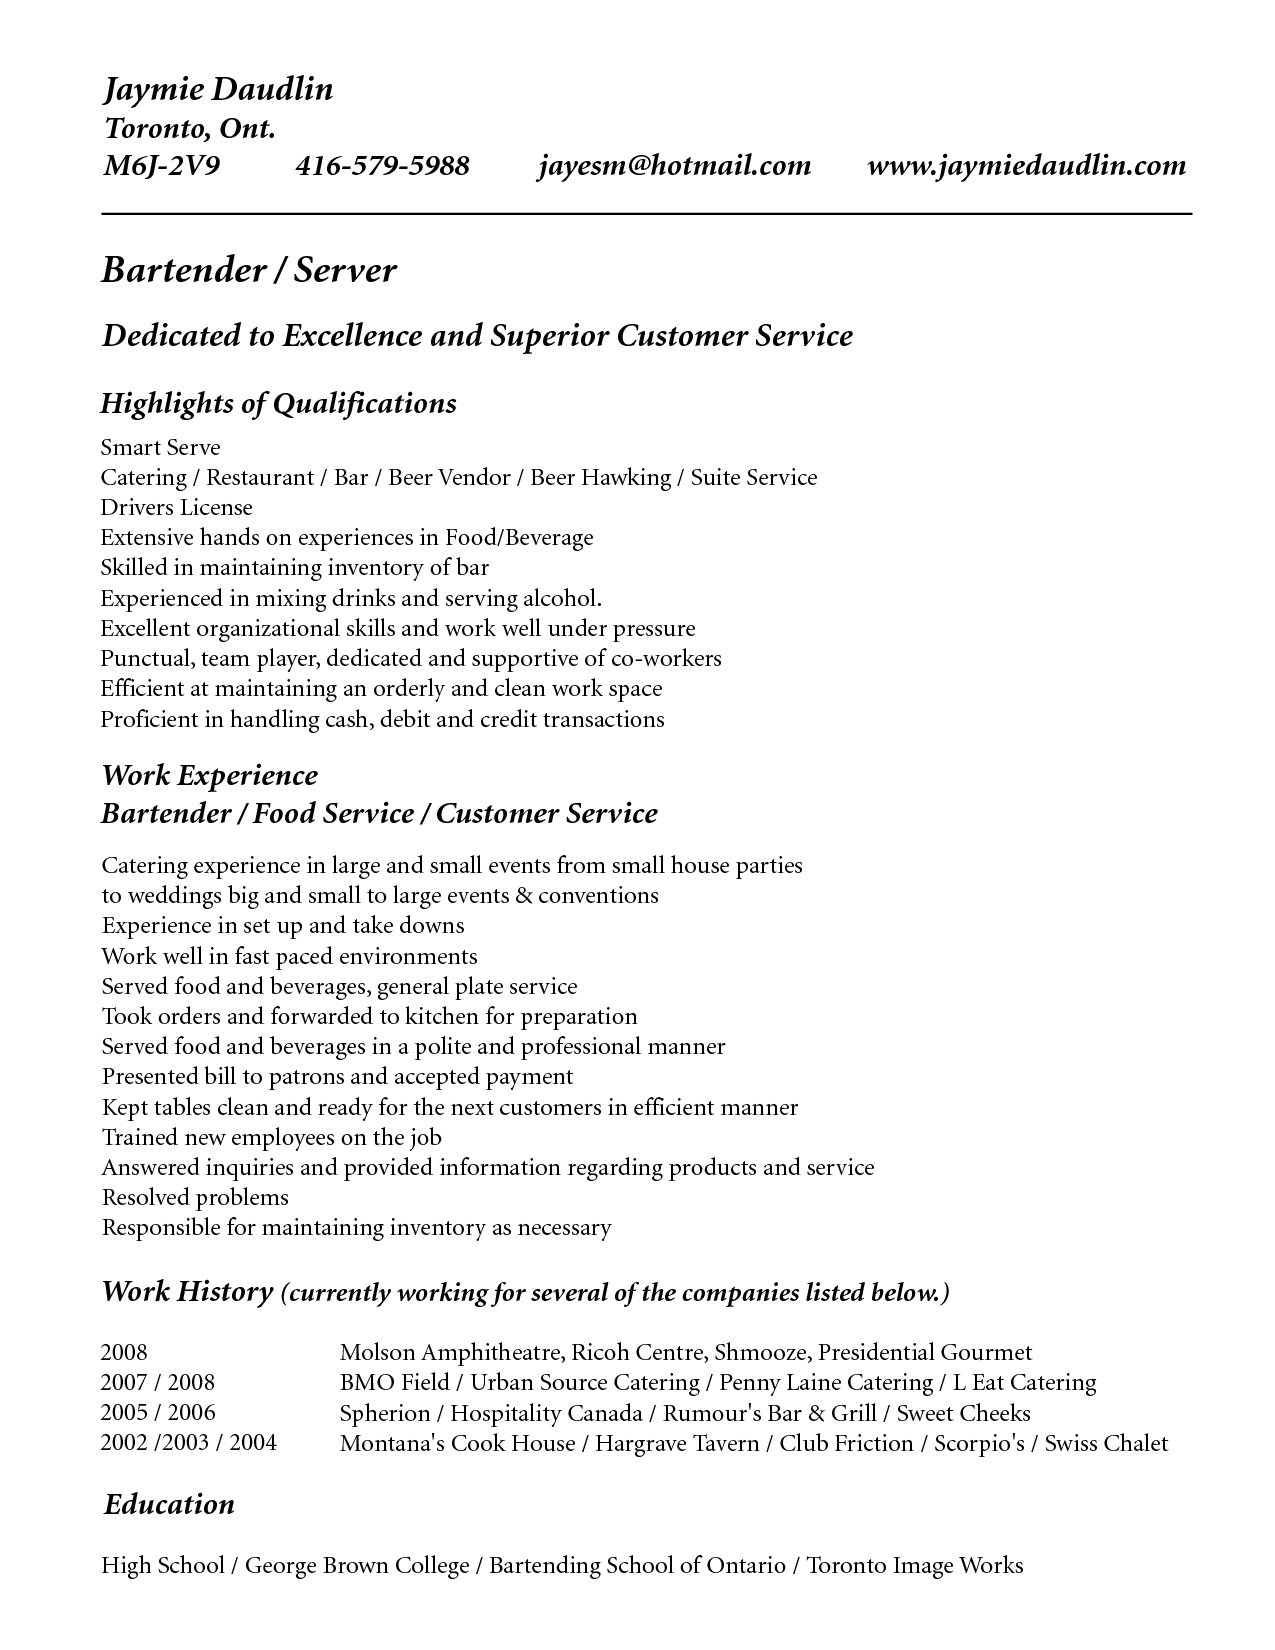 job description of bartender for resume kleo beachfix co